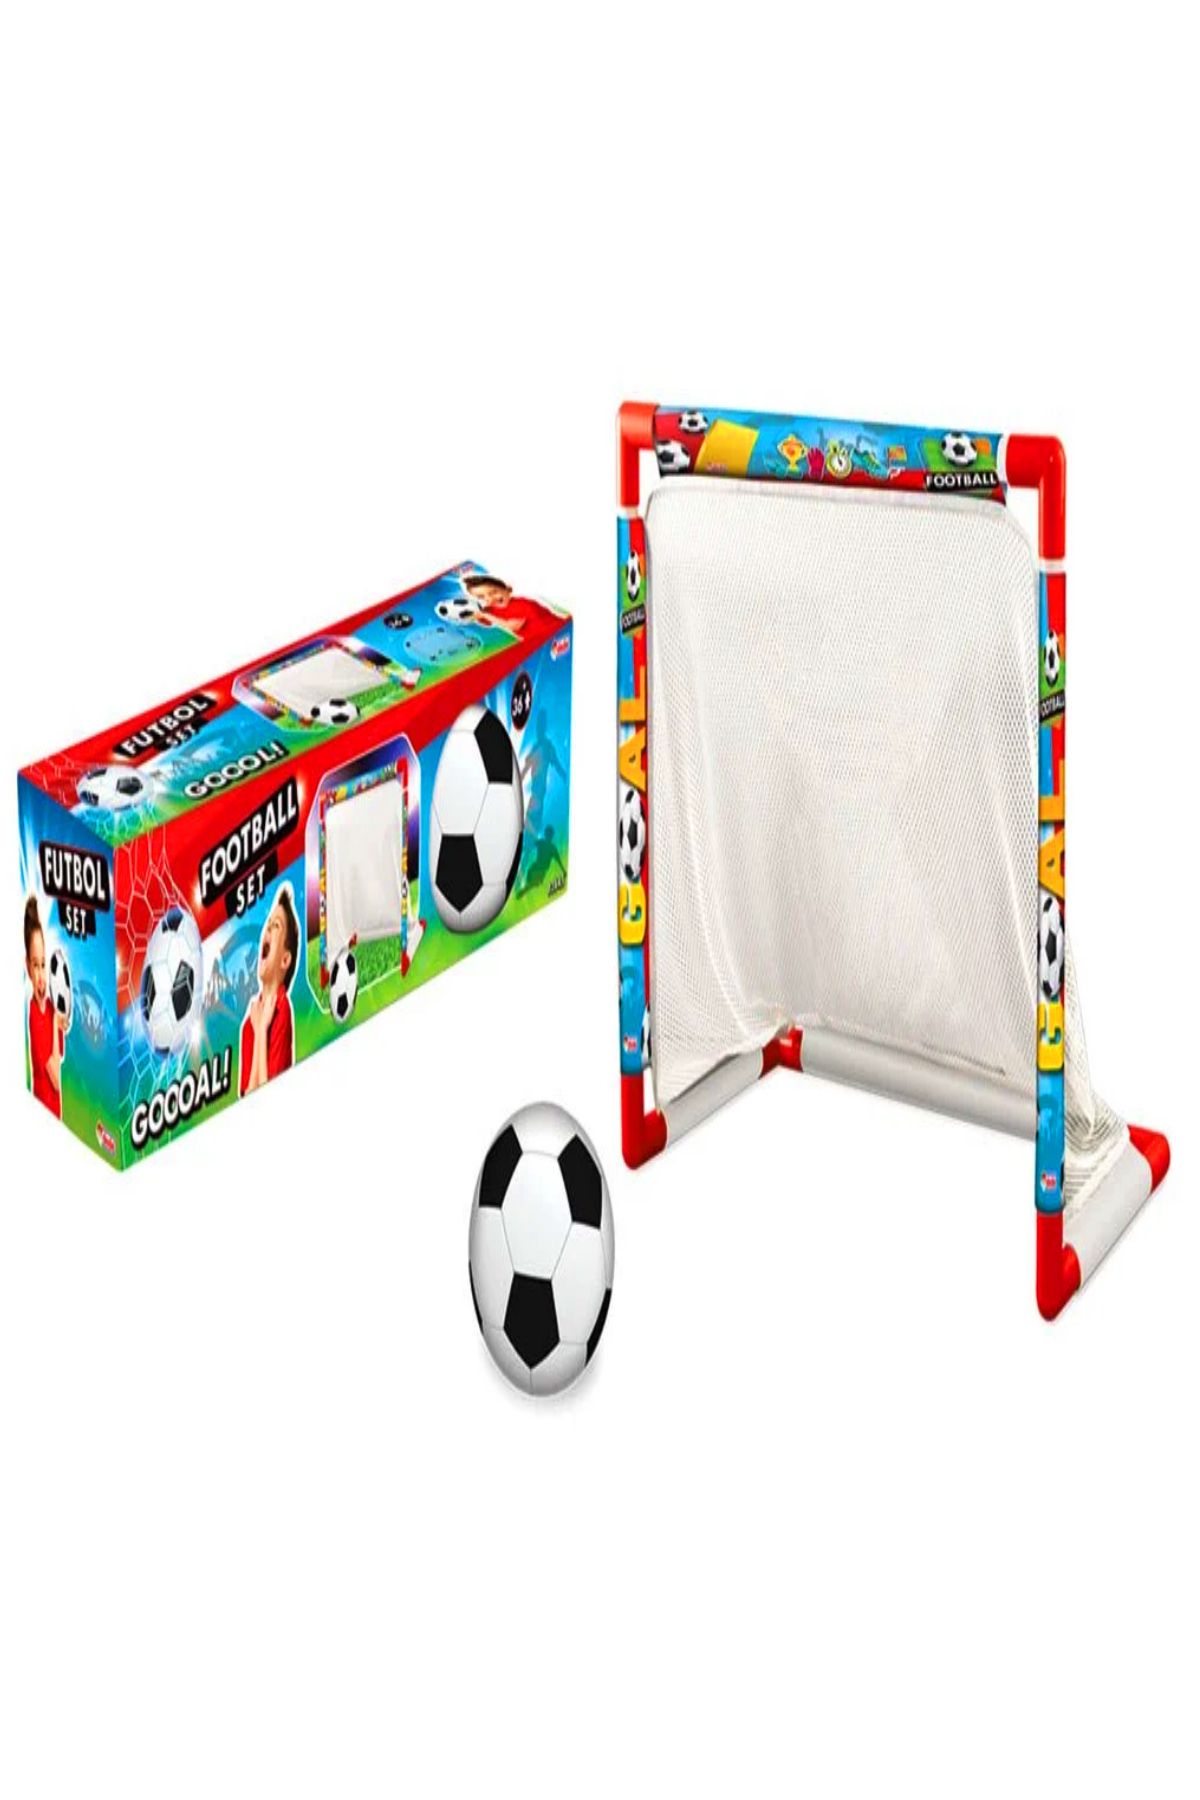 AVDA Futbol Seti - Minyatür Kale / Futbol Kalesi Ve Top